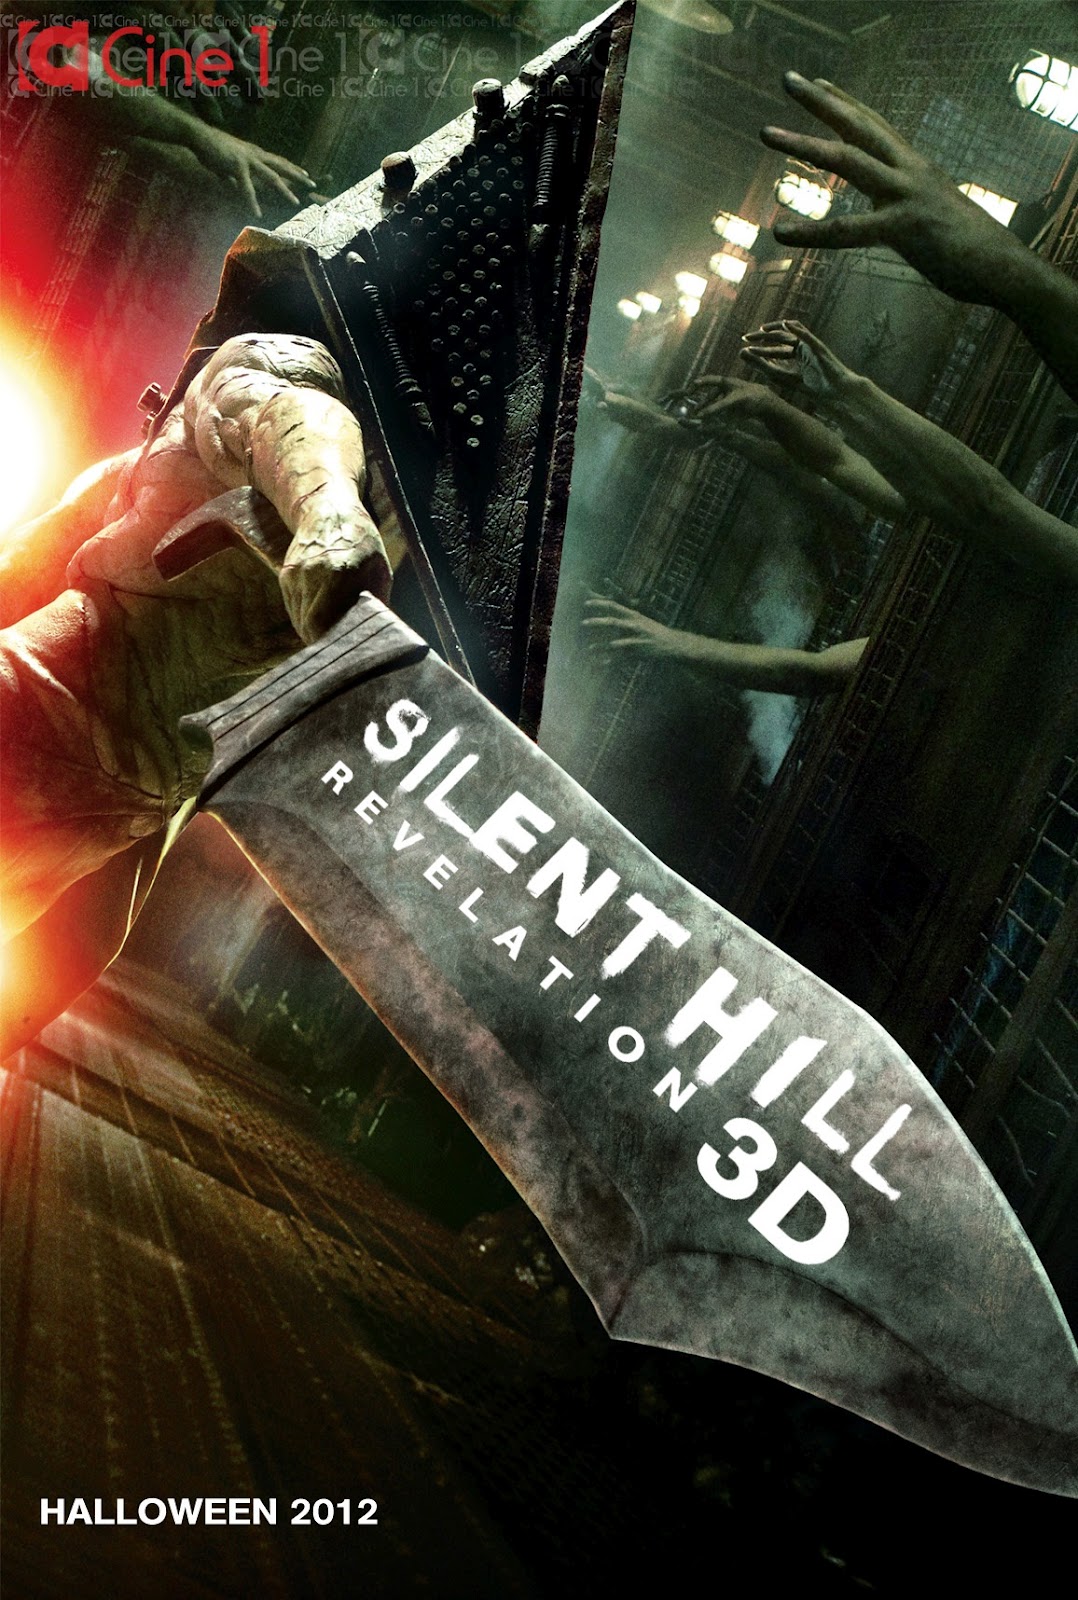 Silent Hill Revelation 3D poster